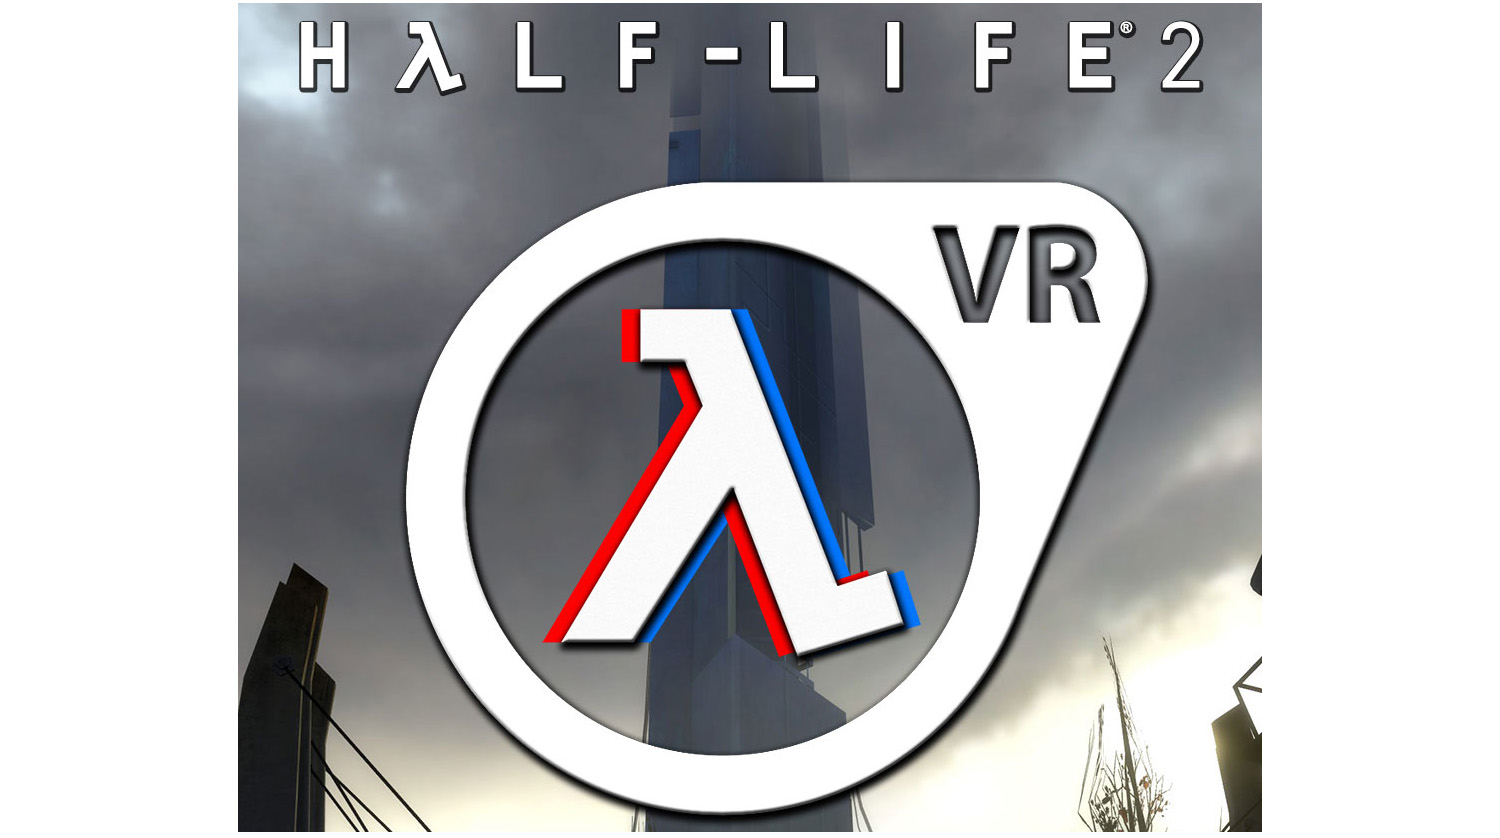 Half-Life 2: VR er ikke et offisielt Valve-prosjekt, men en brukermodifikasjon som er tilgjengelig gratis hvis du allerede har Half-Life 2 installert.